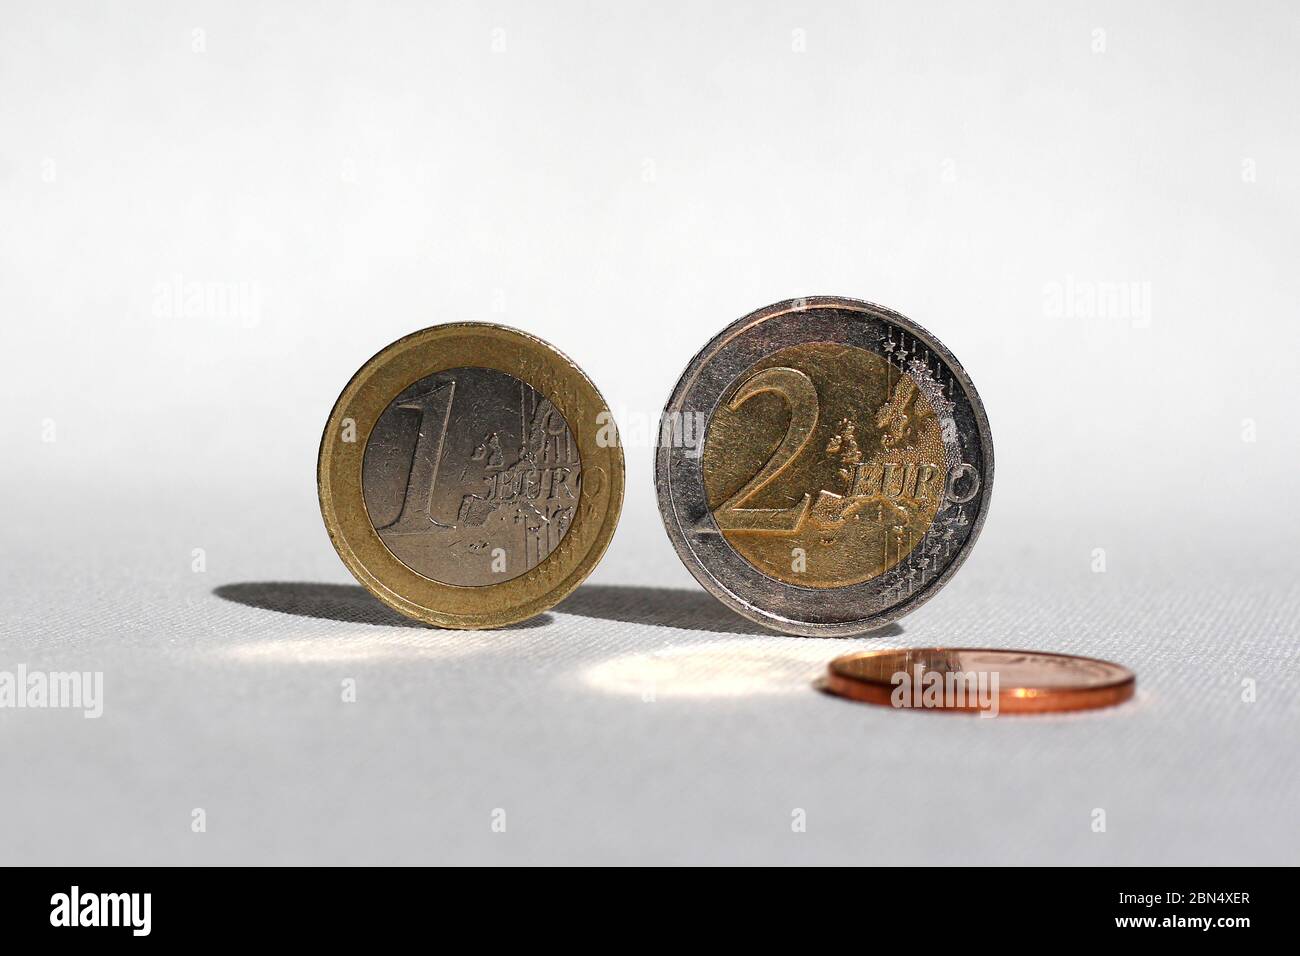 Drei Euro-Münzen auf weißer Oberfläche, zwei balancieren auf ihrer Seite. Mit besonderer Wirkung durch das Sonnenlicht. Stockfoto